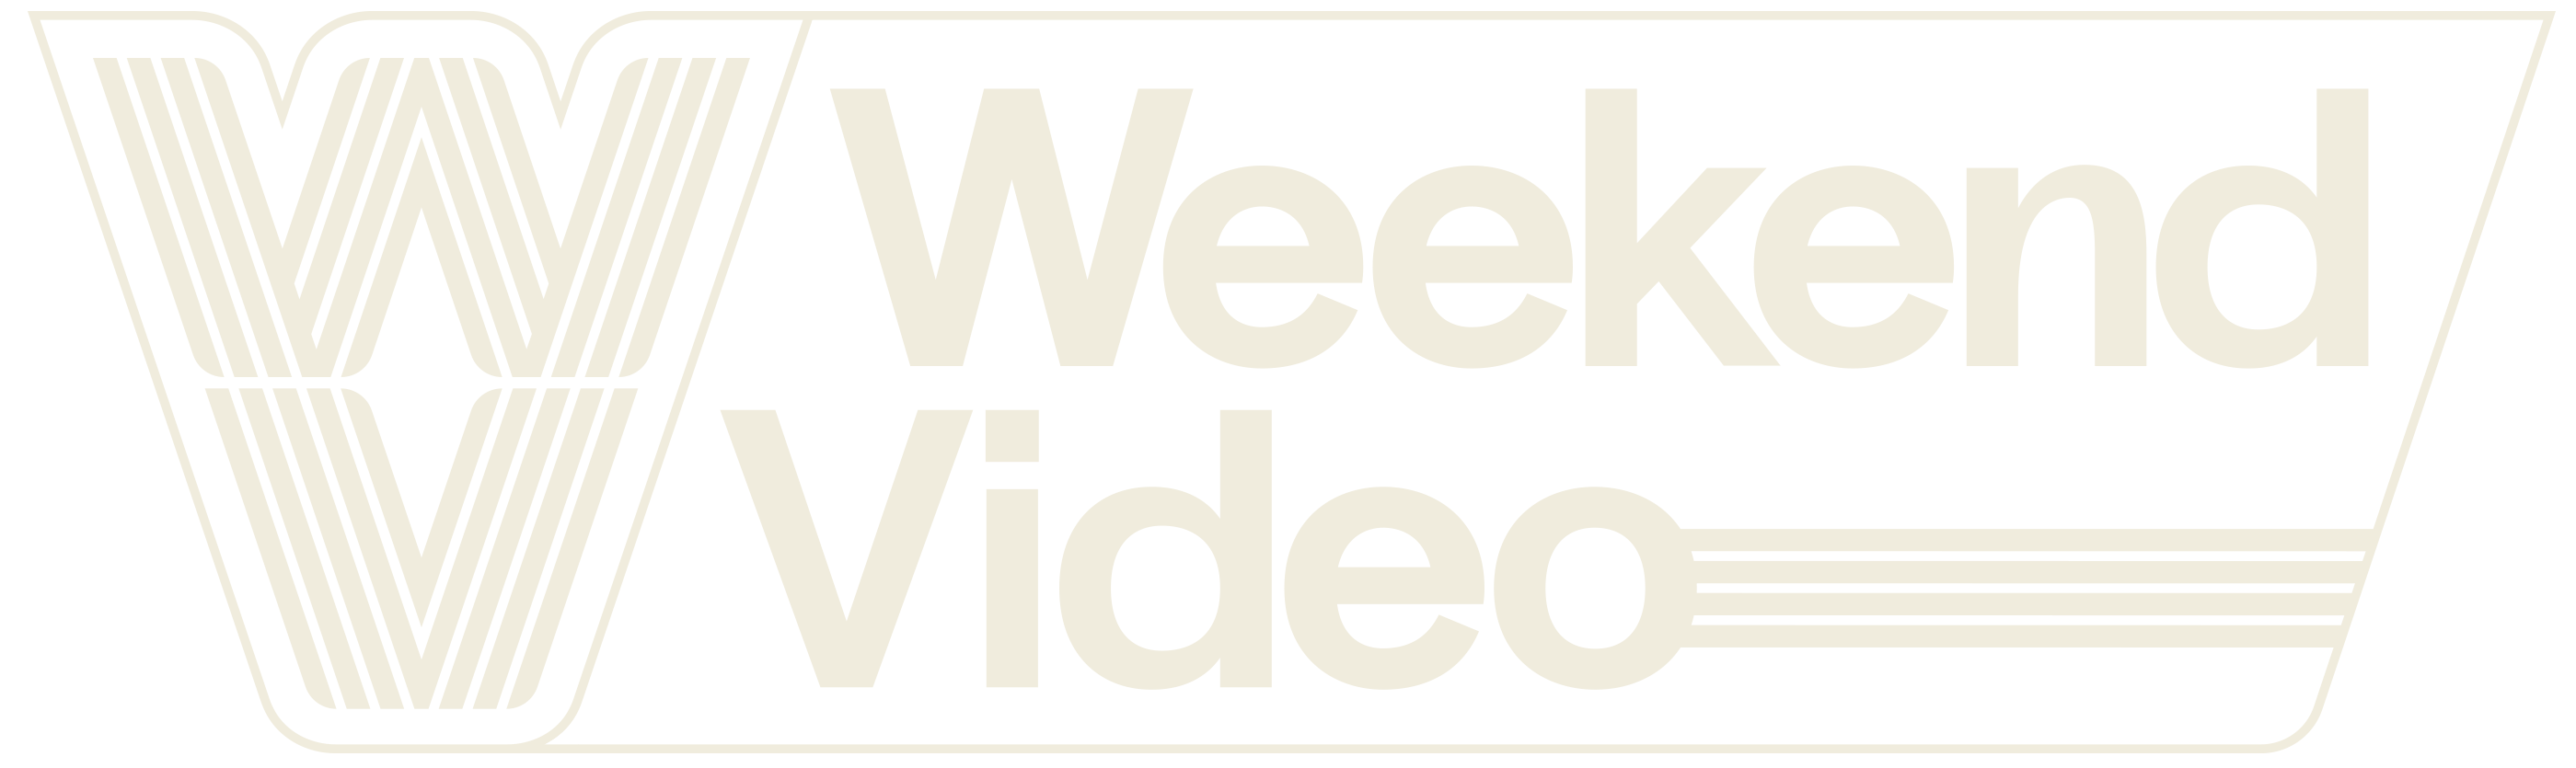 Weekend Video Logo